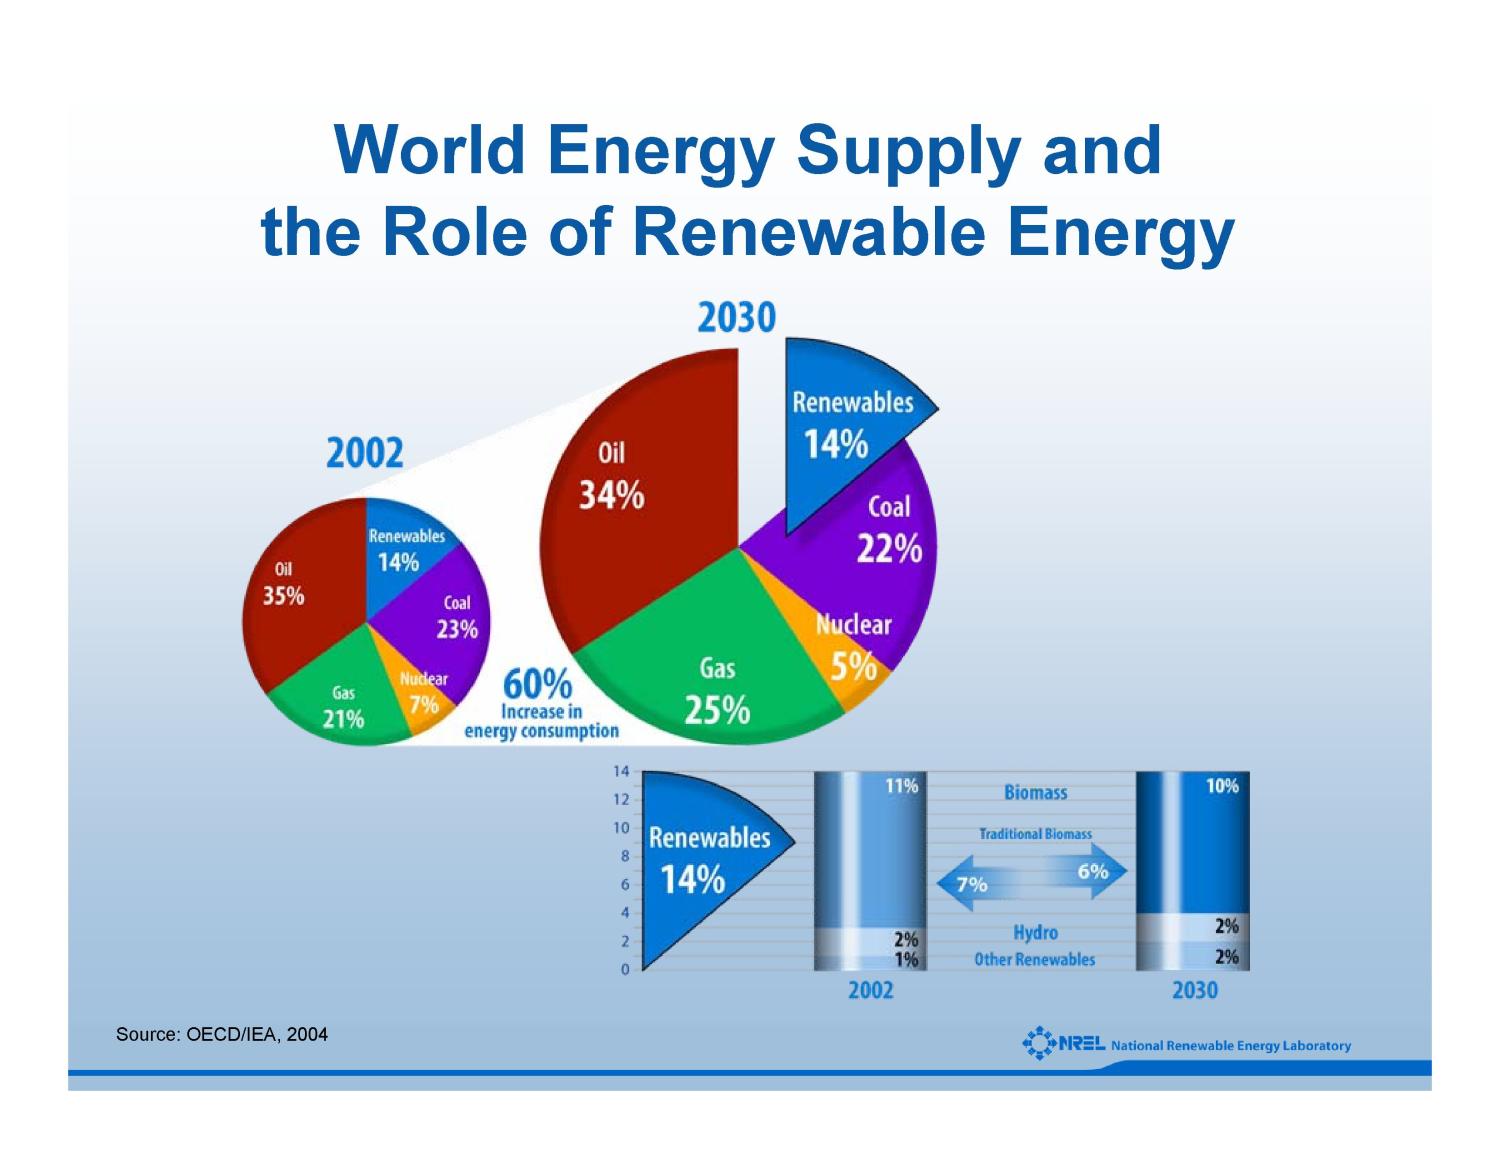 renewable energy thesis topics